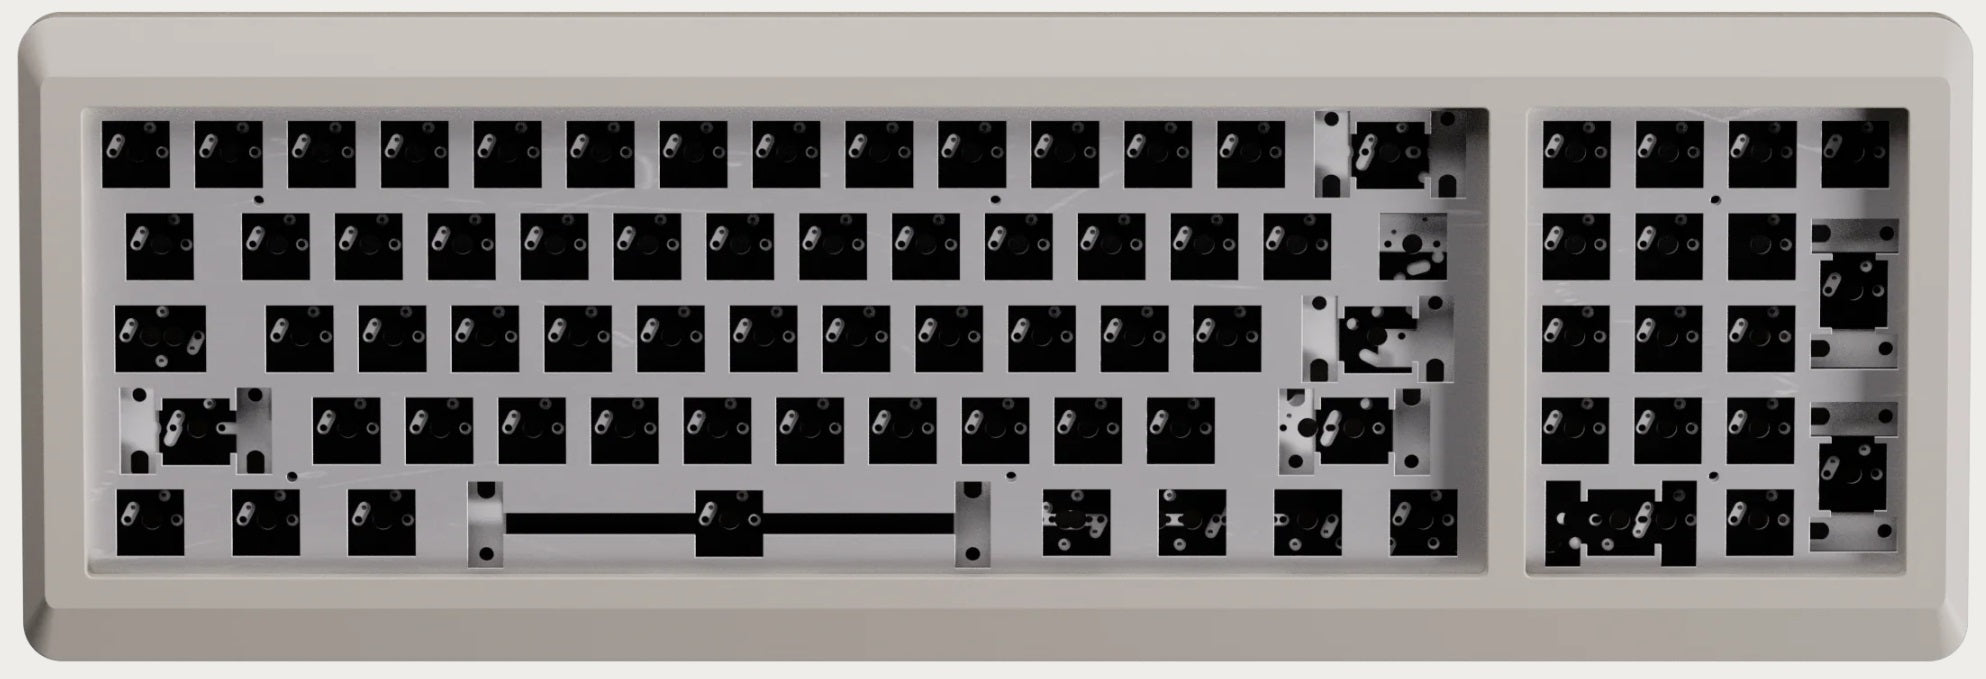 Vortex M0110A Aluminum Barebones Hotswap DIY Keyboard Kit MK991UZI46 |0|